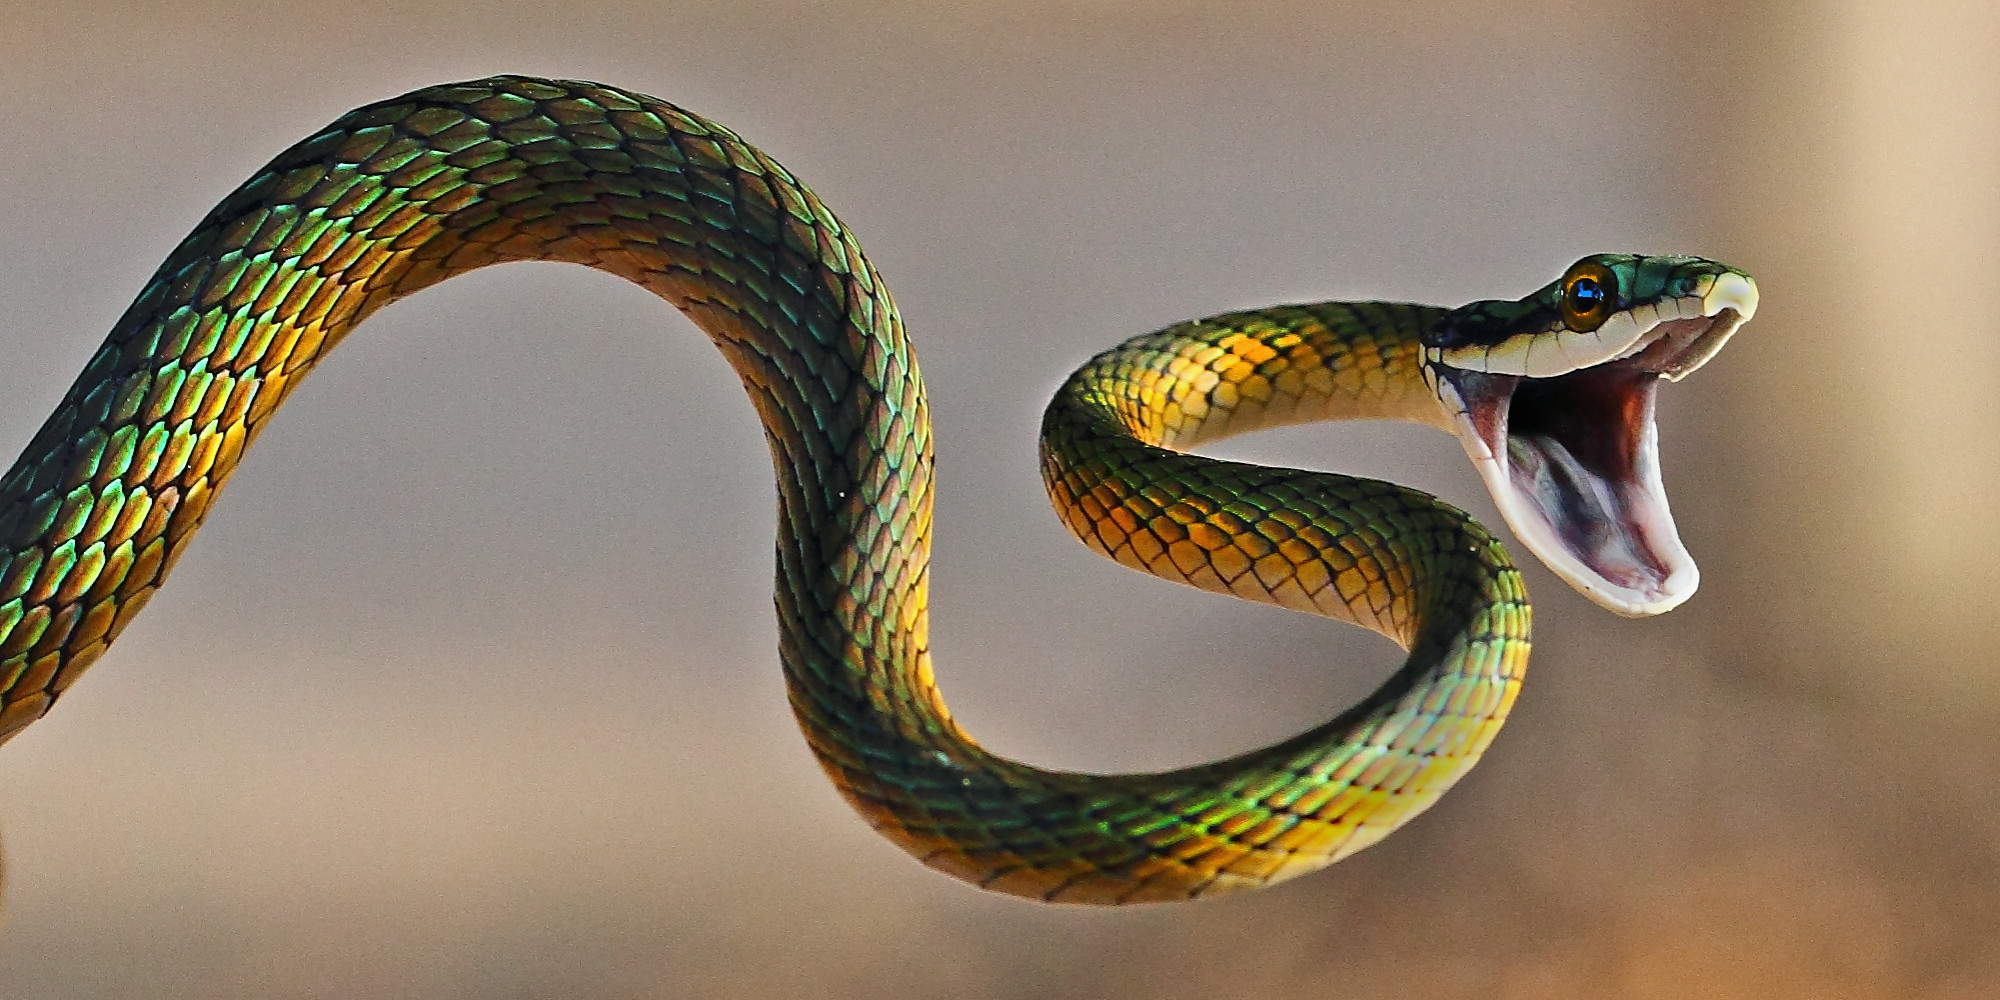 dangerous snakes images clipart